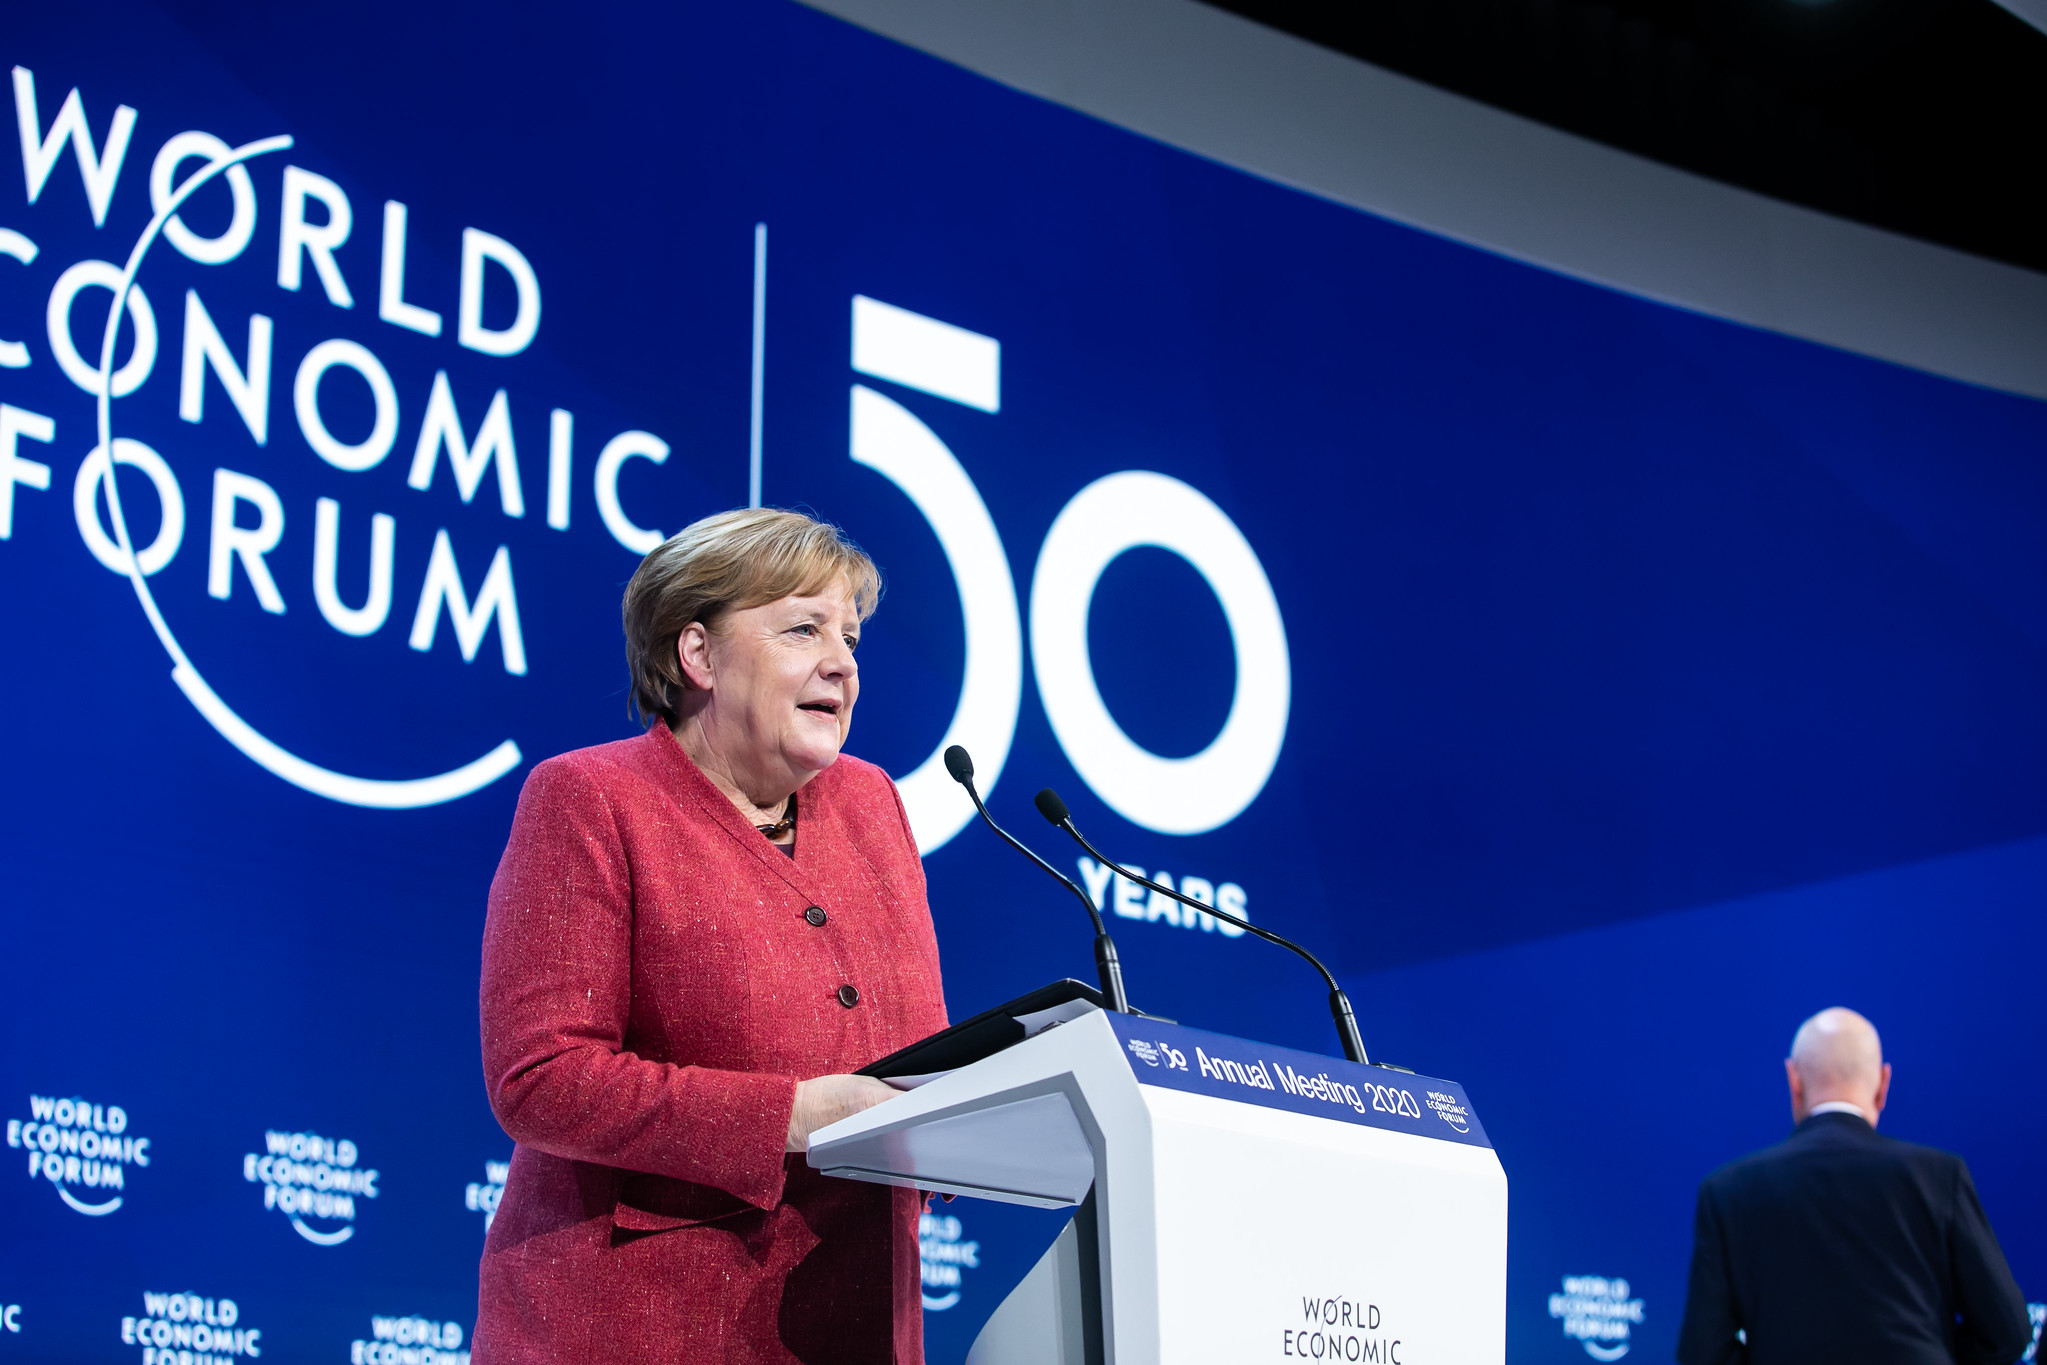 Merkel quer fechar bares e academias para conter covid-19 na Alemanha